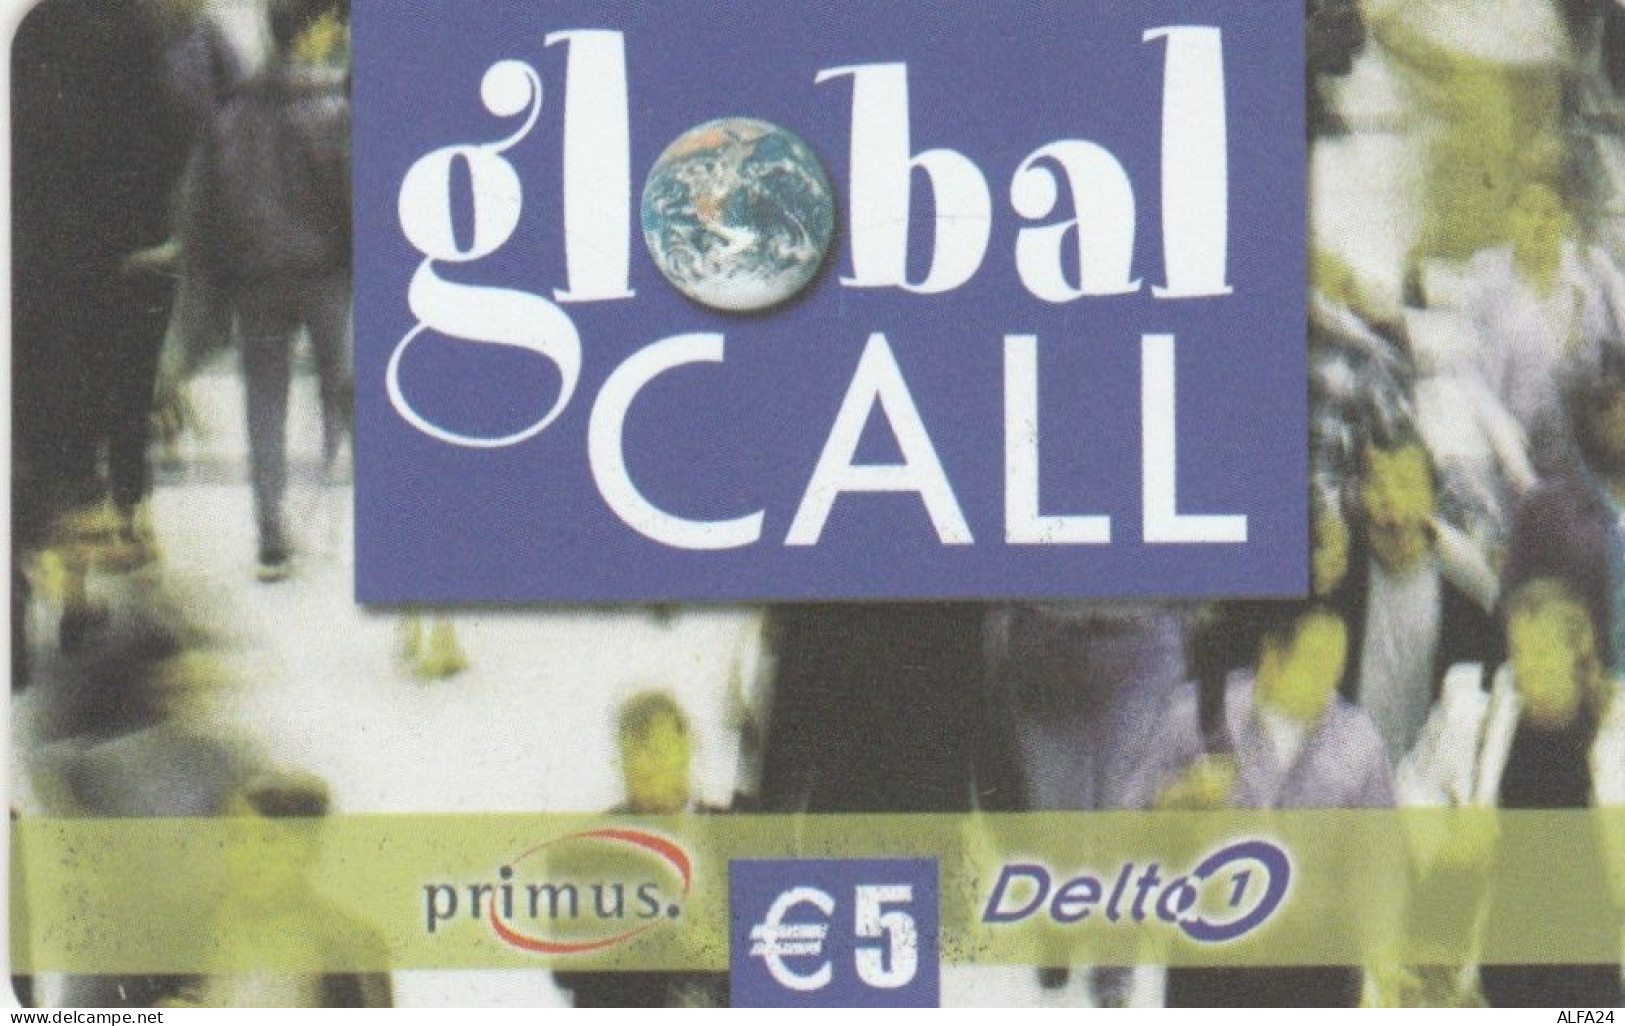 PREPAID PHONE CARD ITALIA (CK3198 - Schede GSM, Prepagate & Ricariche